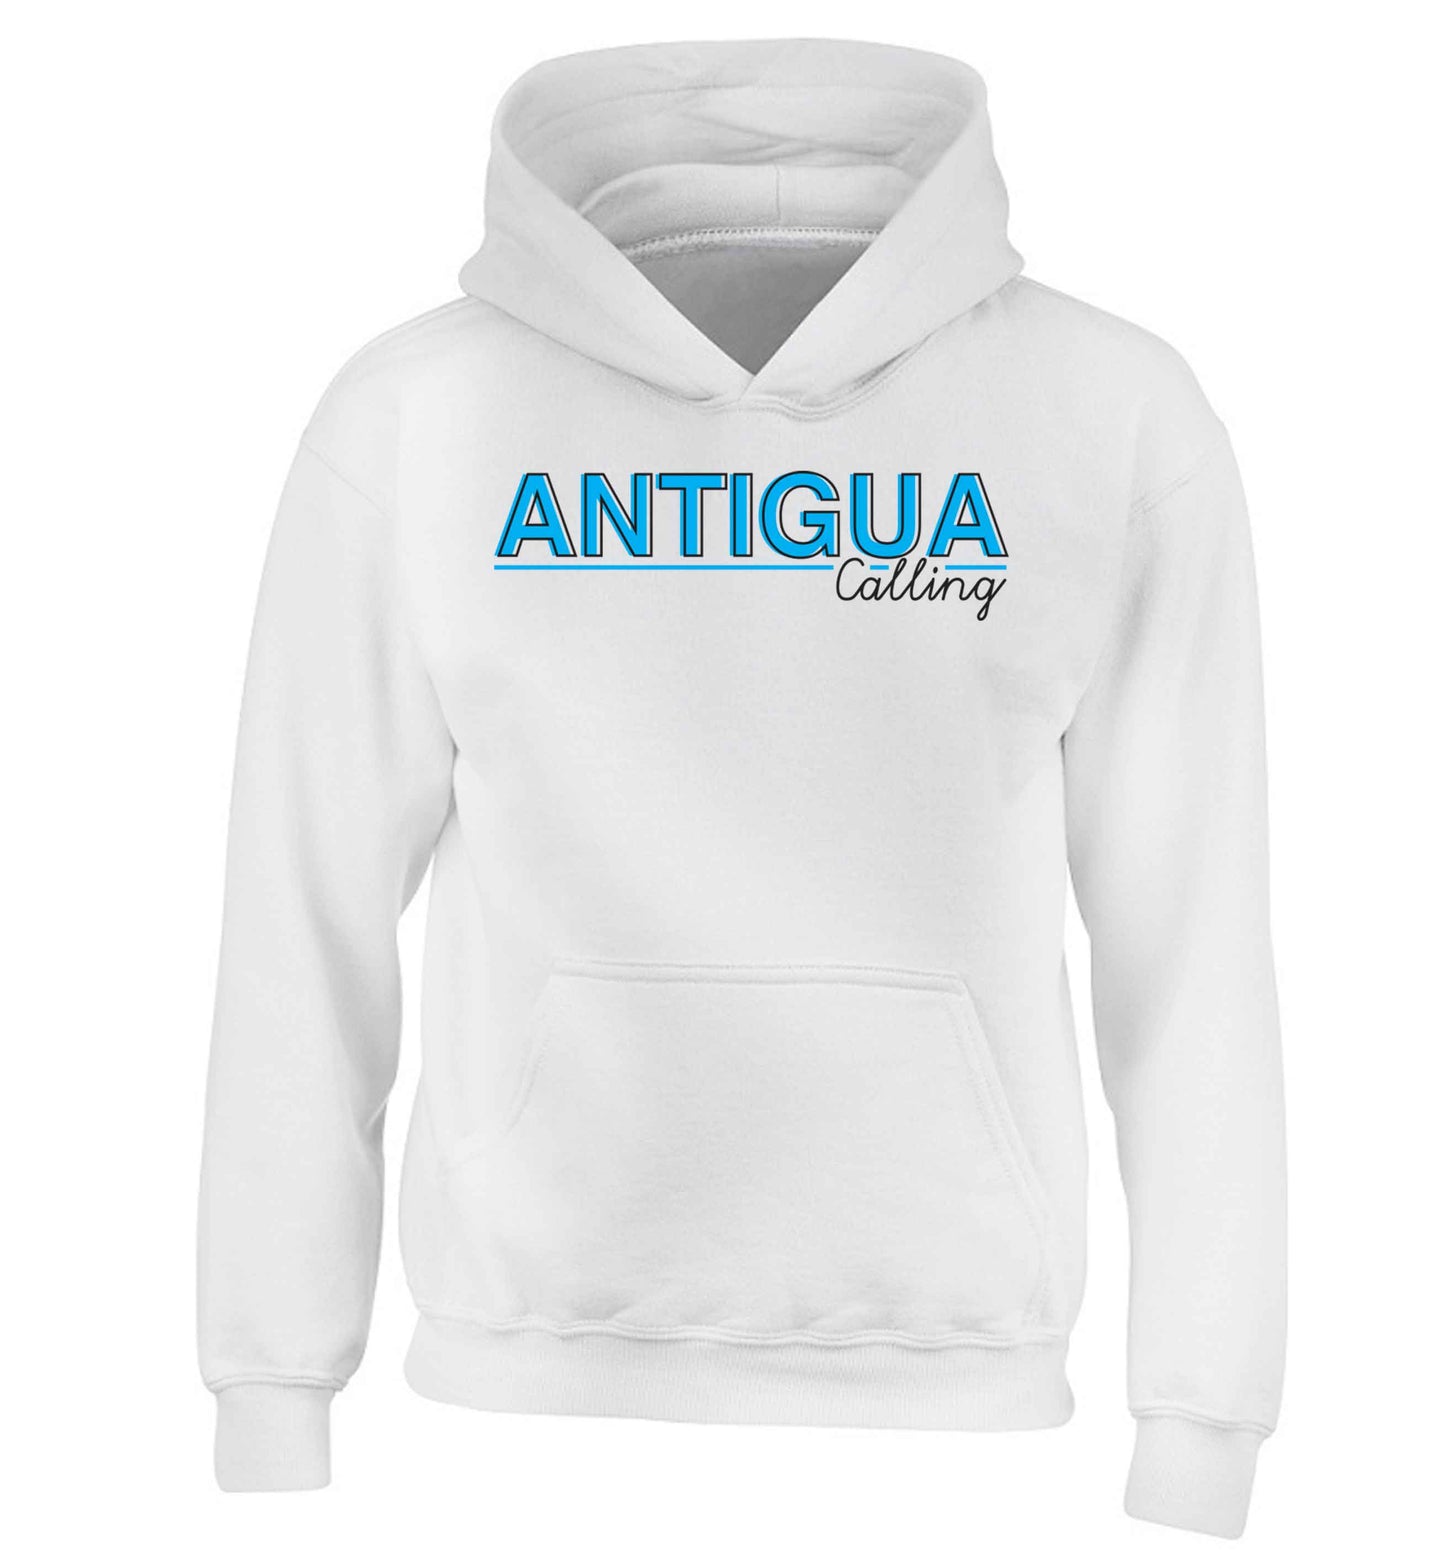 Antigua calling children's white hoodie 12-13 Years